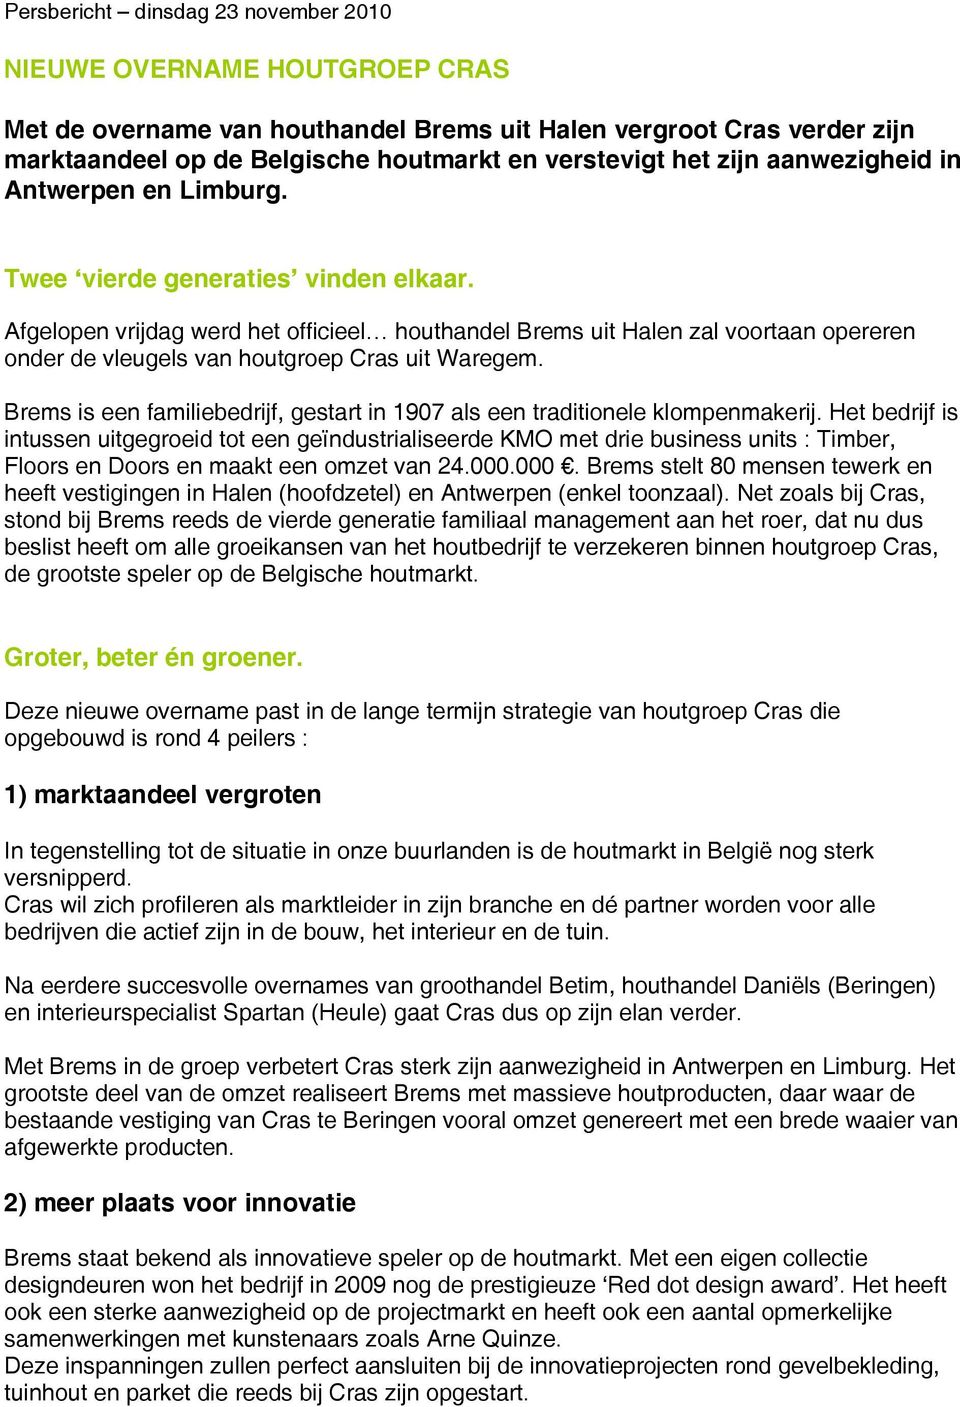 Afgelopen vrijdag werd het officieel houthandel Brems uit Halen zal voortaan opereren onder de vleugels van houtgroep Cras uit Waregem.